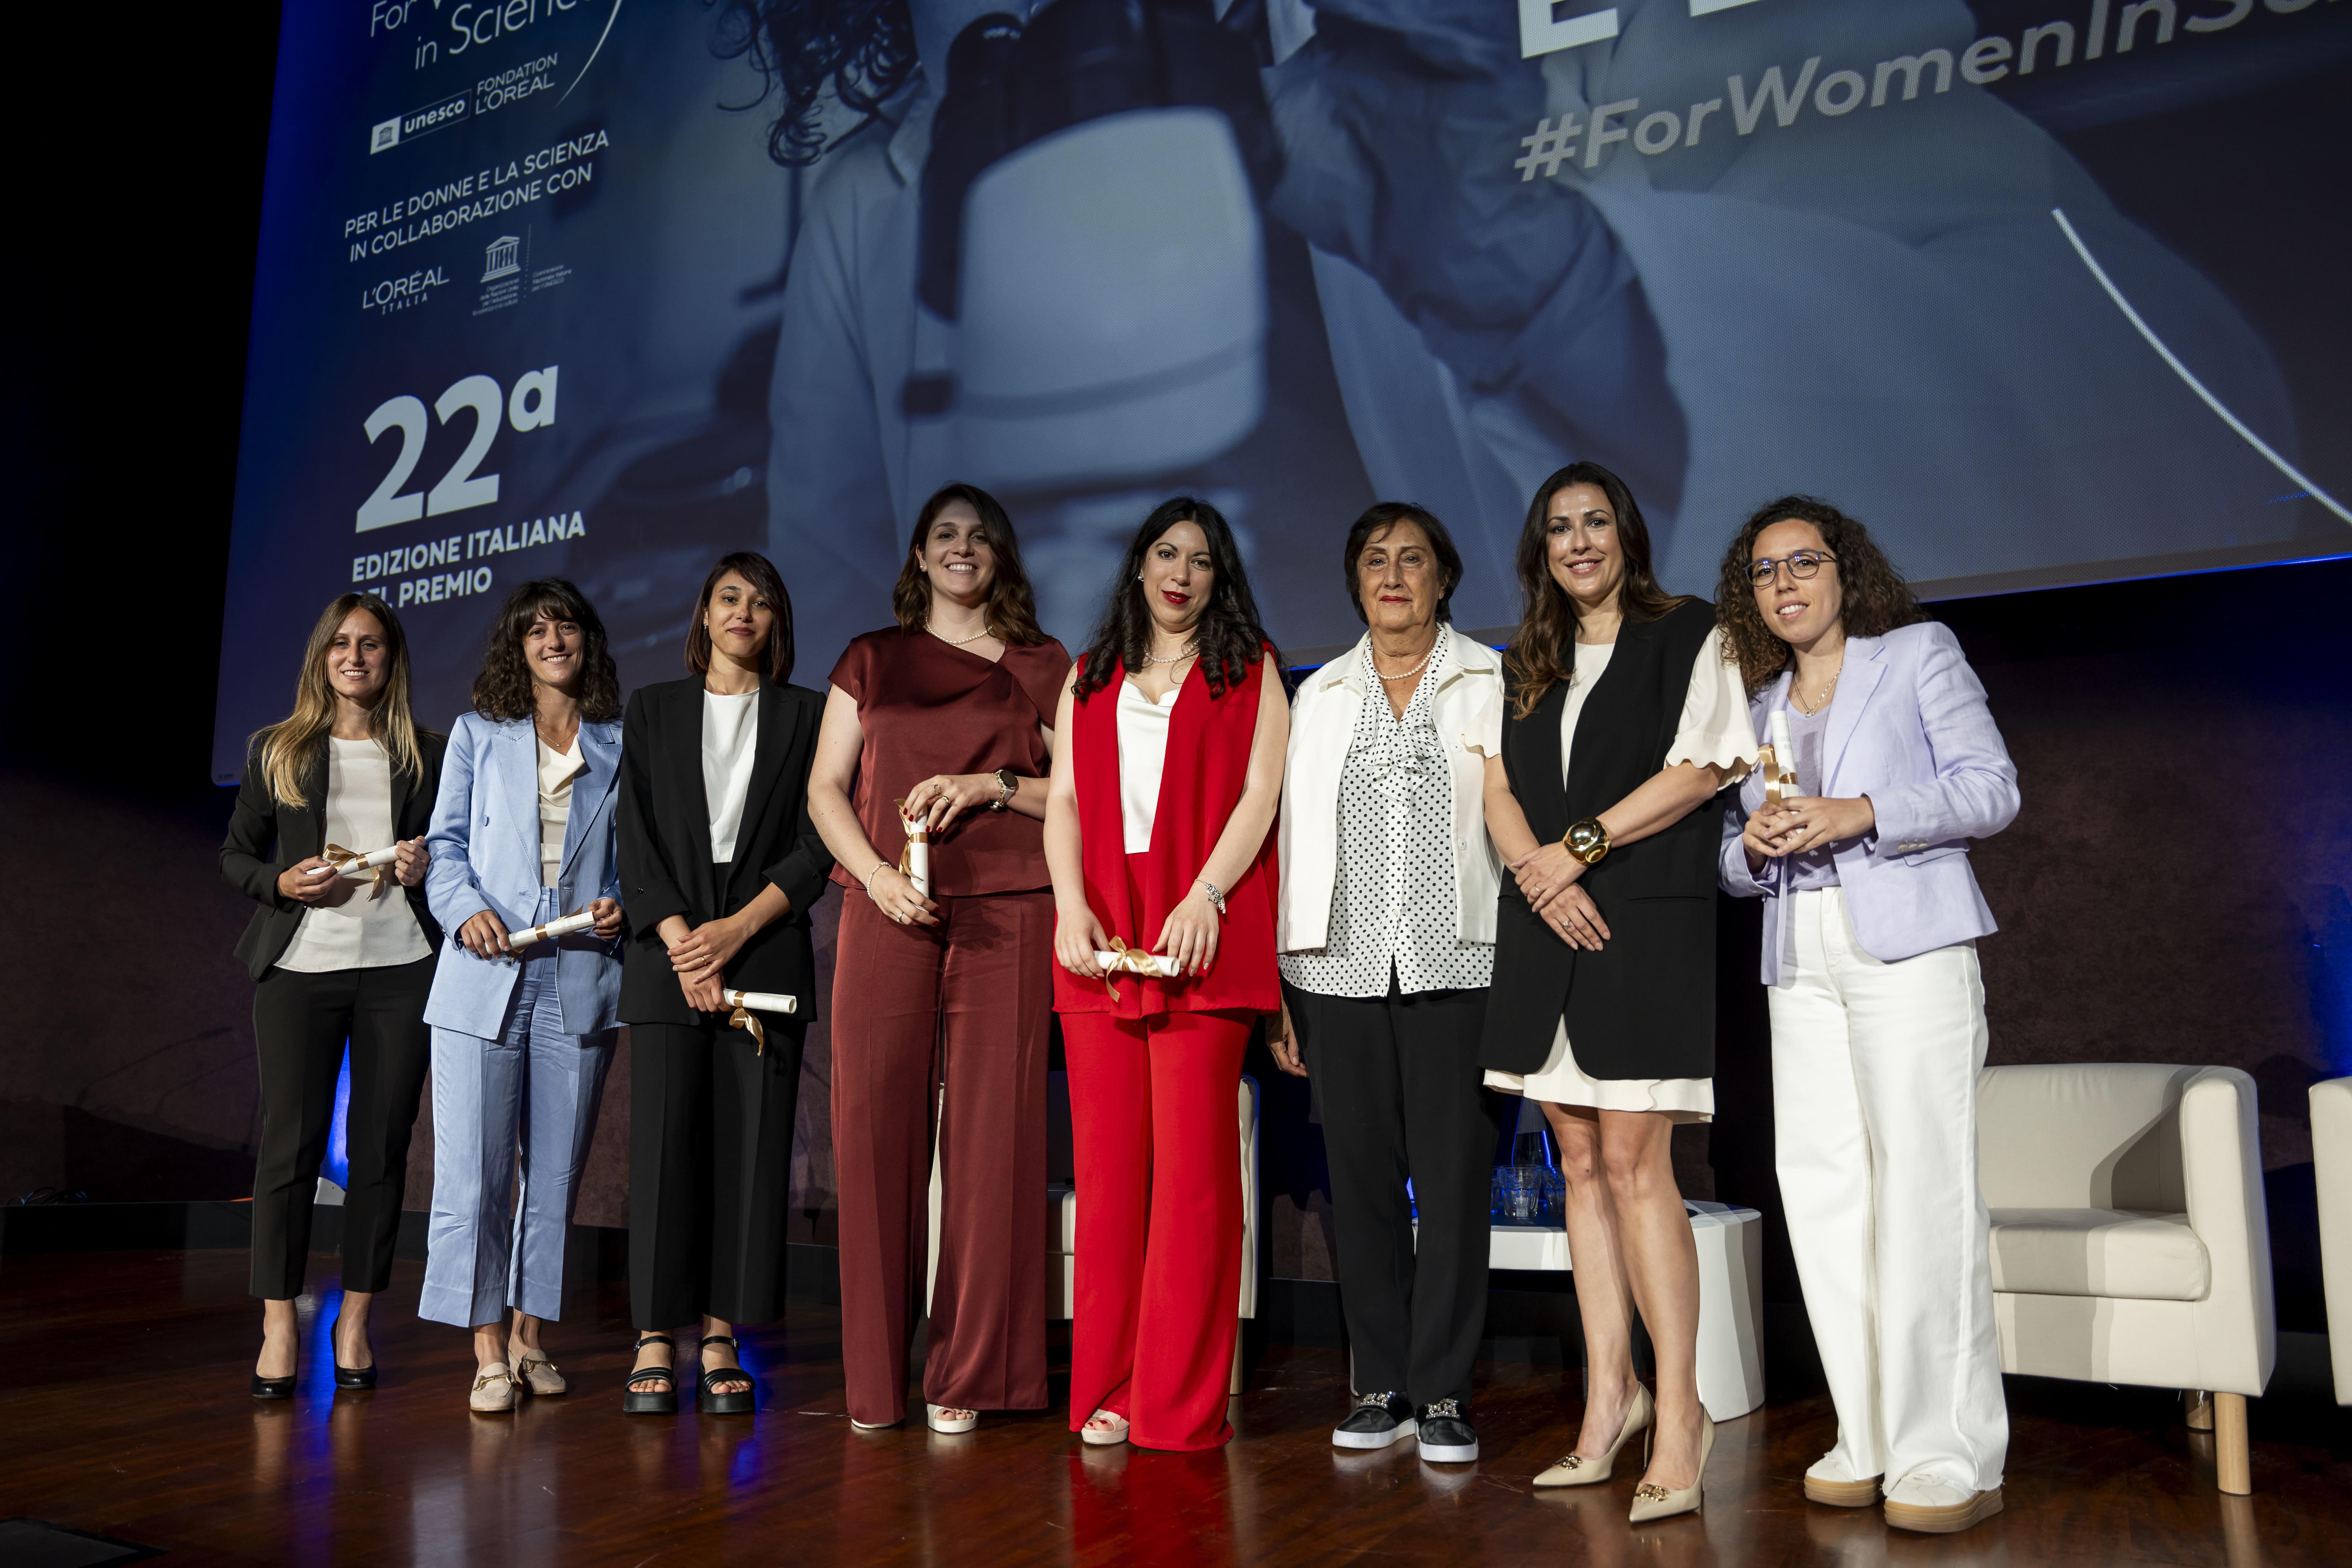 For Women in Science - L’Oréal Italia e l’Unesco premiano 6 giovani scienziate italiane di talento